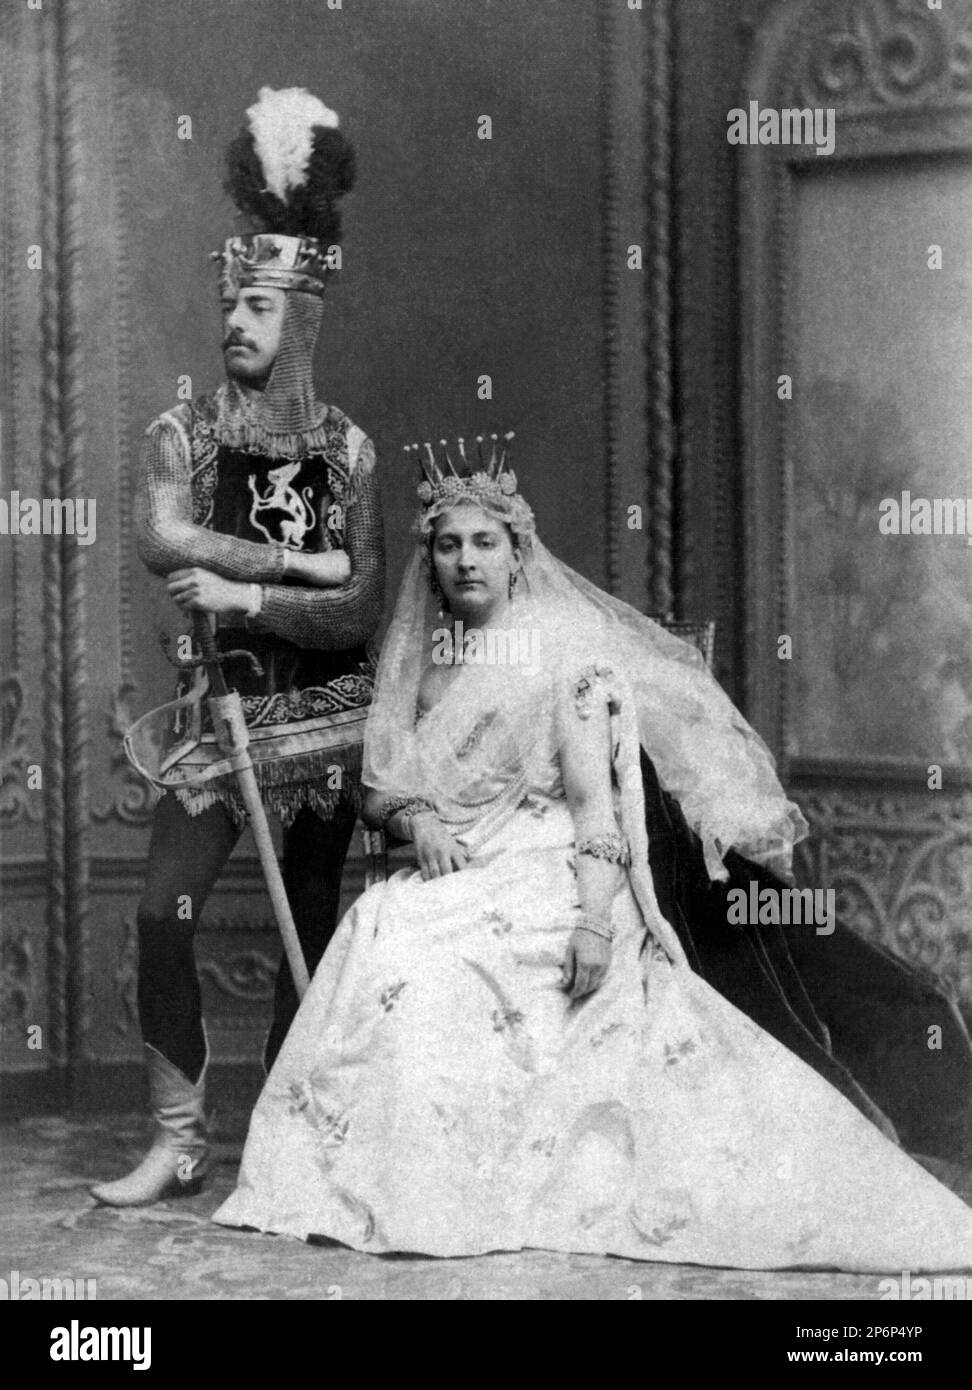 1870 . Februar 11 , Turin , Italien : der Prinz AMEDEO di SAVOIA d' AOSTA ( Amedeo Ferdinando Maria , 1845 - 1890 ) während einer Maskenparty . Sohn von König Vittorio Emanuele II. Und Bruder von König Umberto I. Auf diesem Foto mit seiner ersten Frau MARIA VITTORIA dal POZZO della CISTERNA ( 1847 - 1876 ) , die 1867 verheiratet war . Amedeo di Savoia war VON 1870 bis 1873 KÖNIG VON SPANIEN . 1888 heiratete seine neunte Prinzessin Letizia Bonaparte ( 1866 - 1926 ) 2. Mal . Gründer der Familie Ramo SAVOIA-AOSTA. - CASA SAVOIA - ITALIA - REALI - SPAGNA - NOBILTA' ITALIANA - SAVOY - ADEL - KÖNIGE - GESCHICHTE Stockfoto